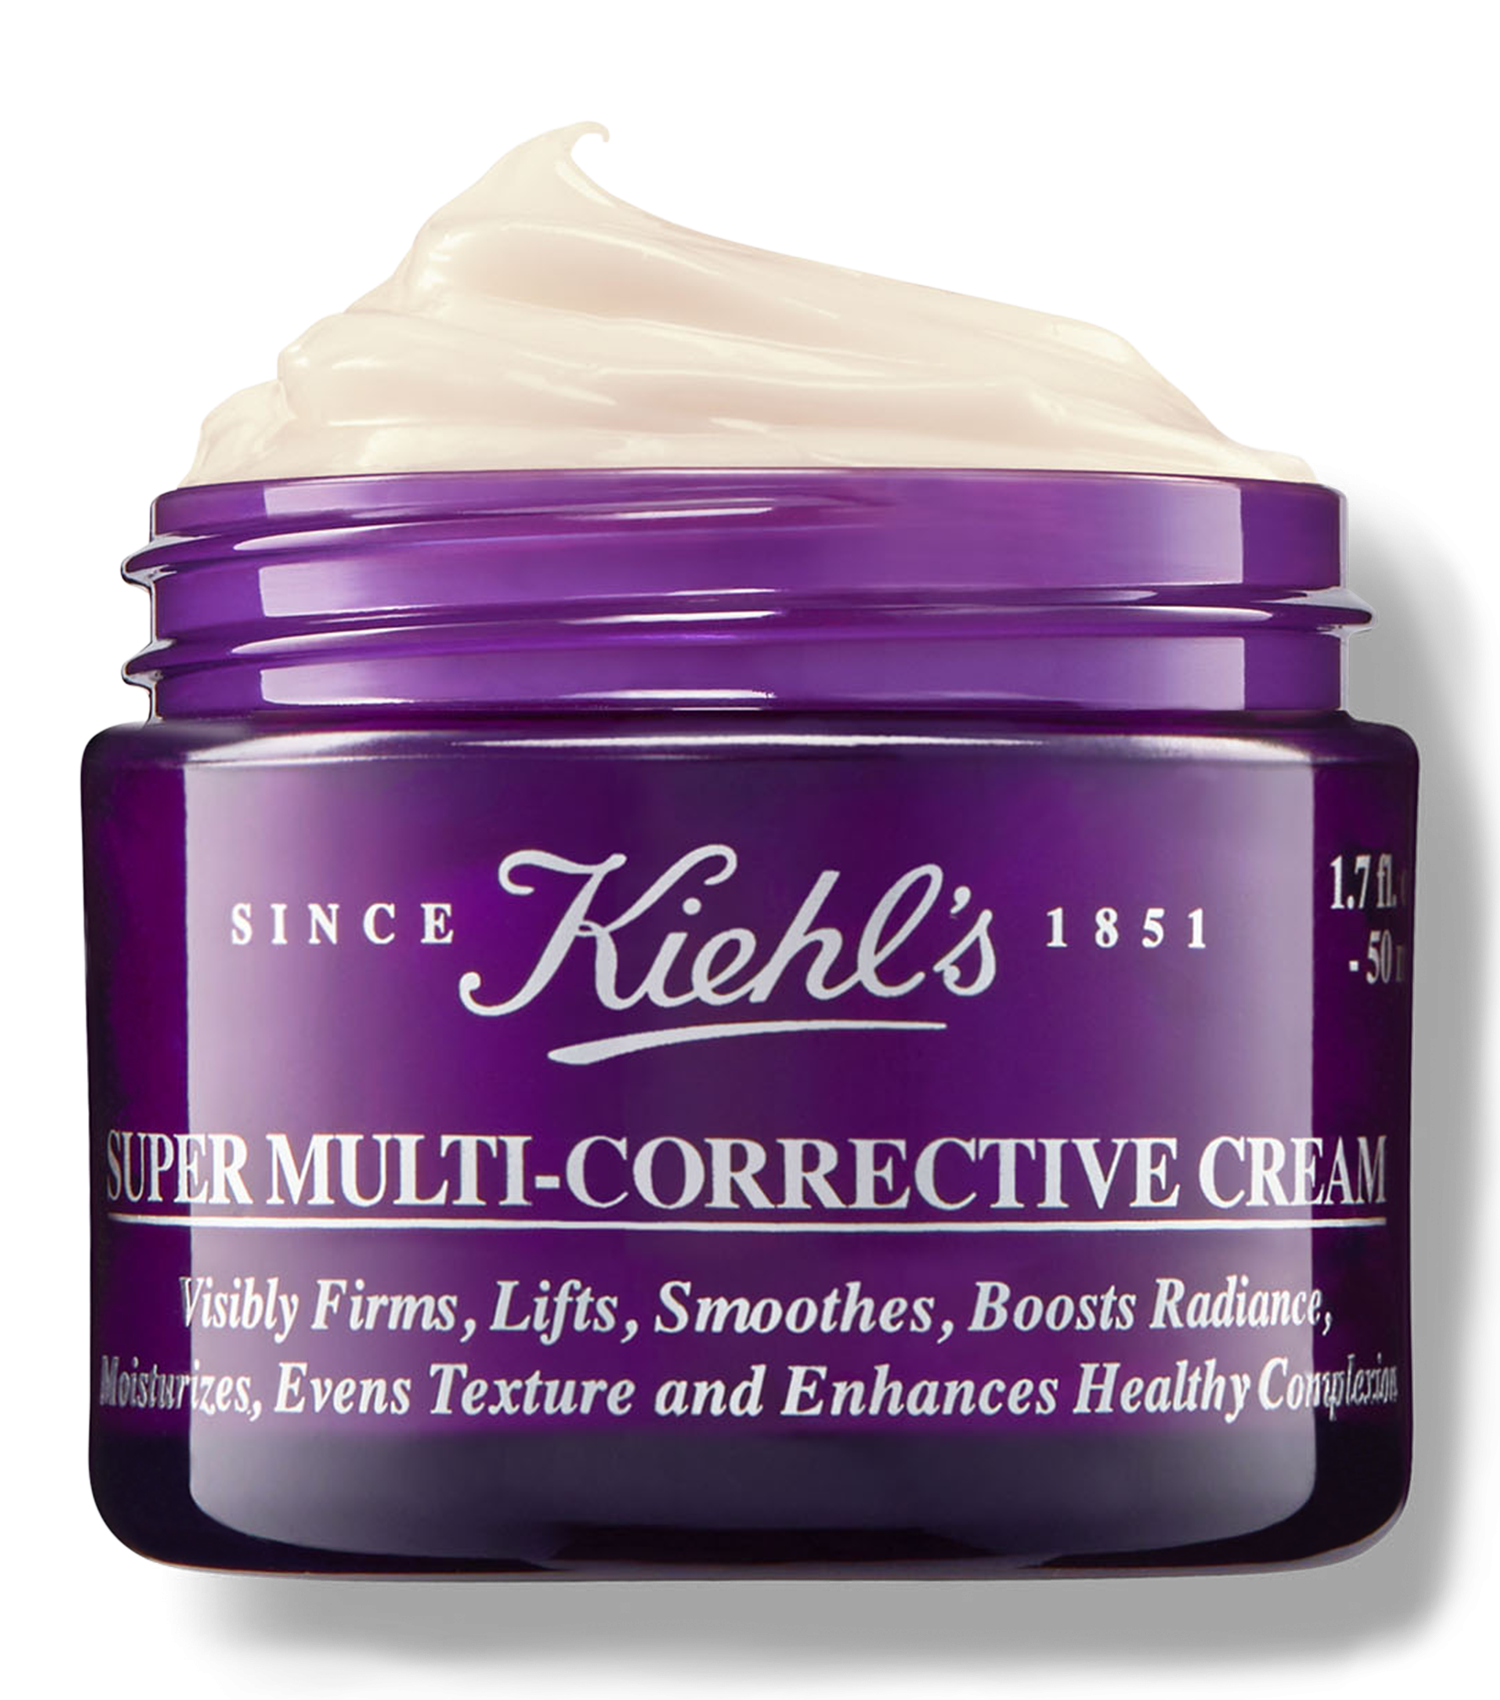 Super Multi-Corrective Anti-Aging Face and Neck Cream 1.7 oz.